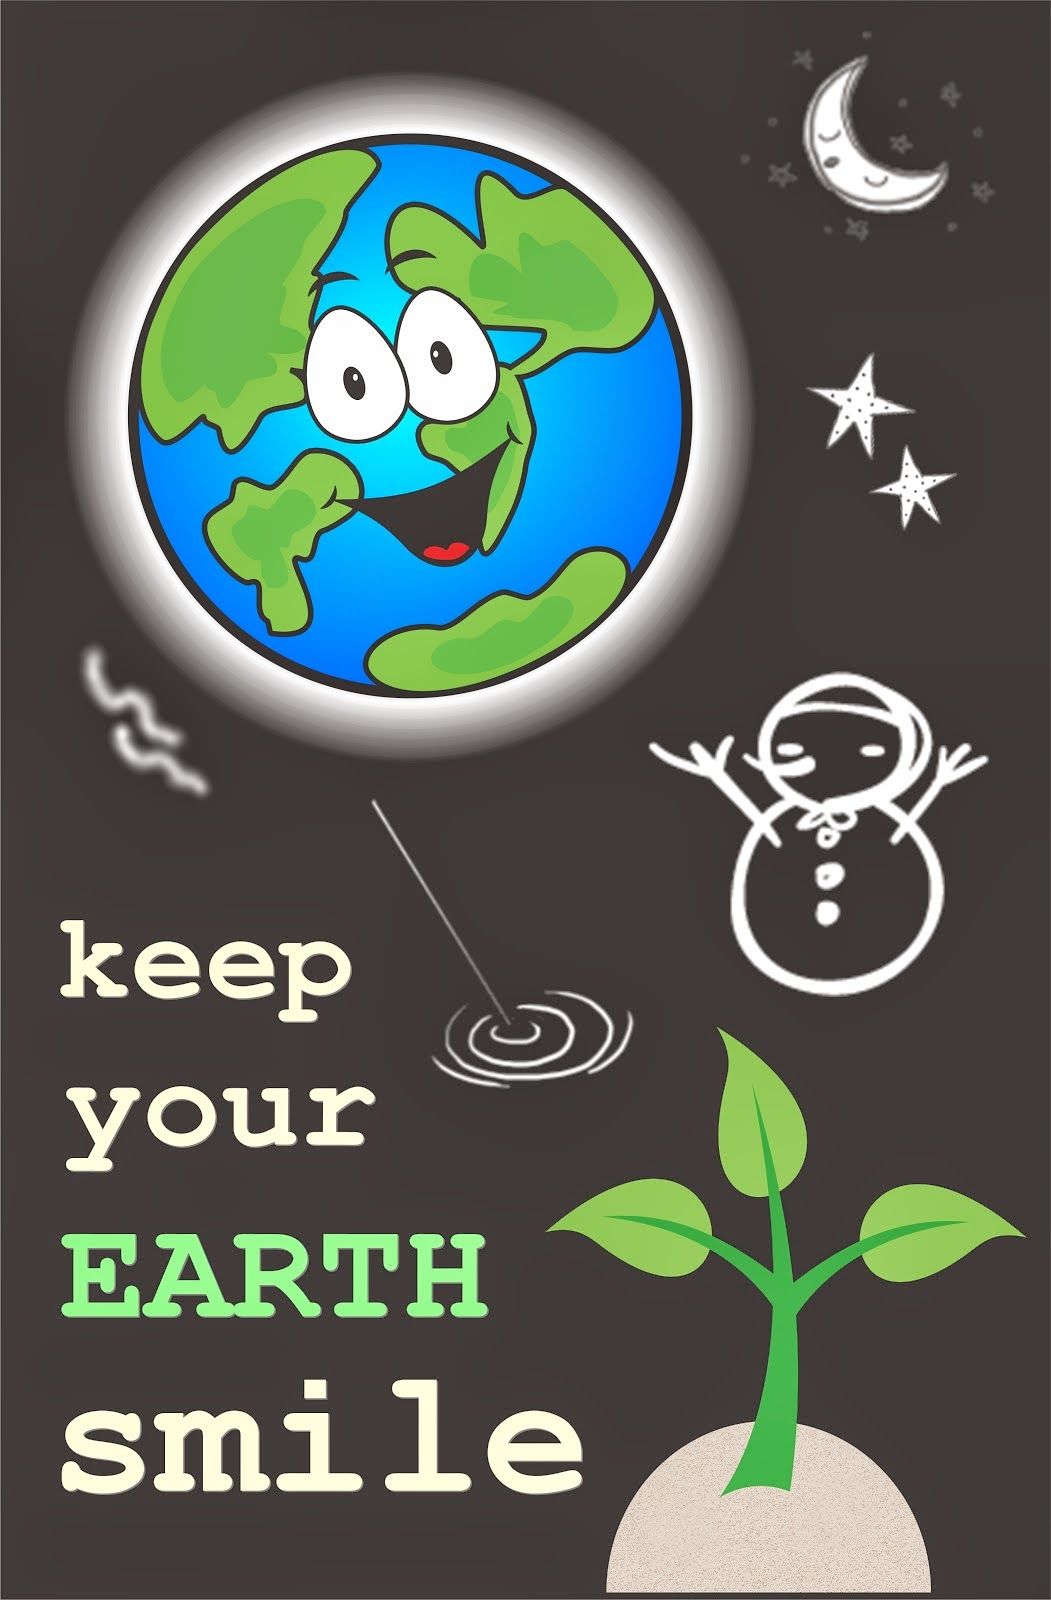 Contoh Gambar Poster Lingkungan Yang Mudah Digambar